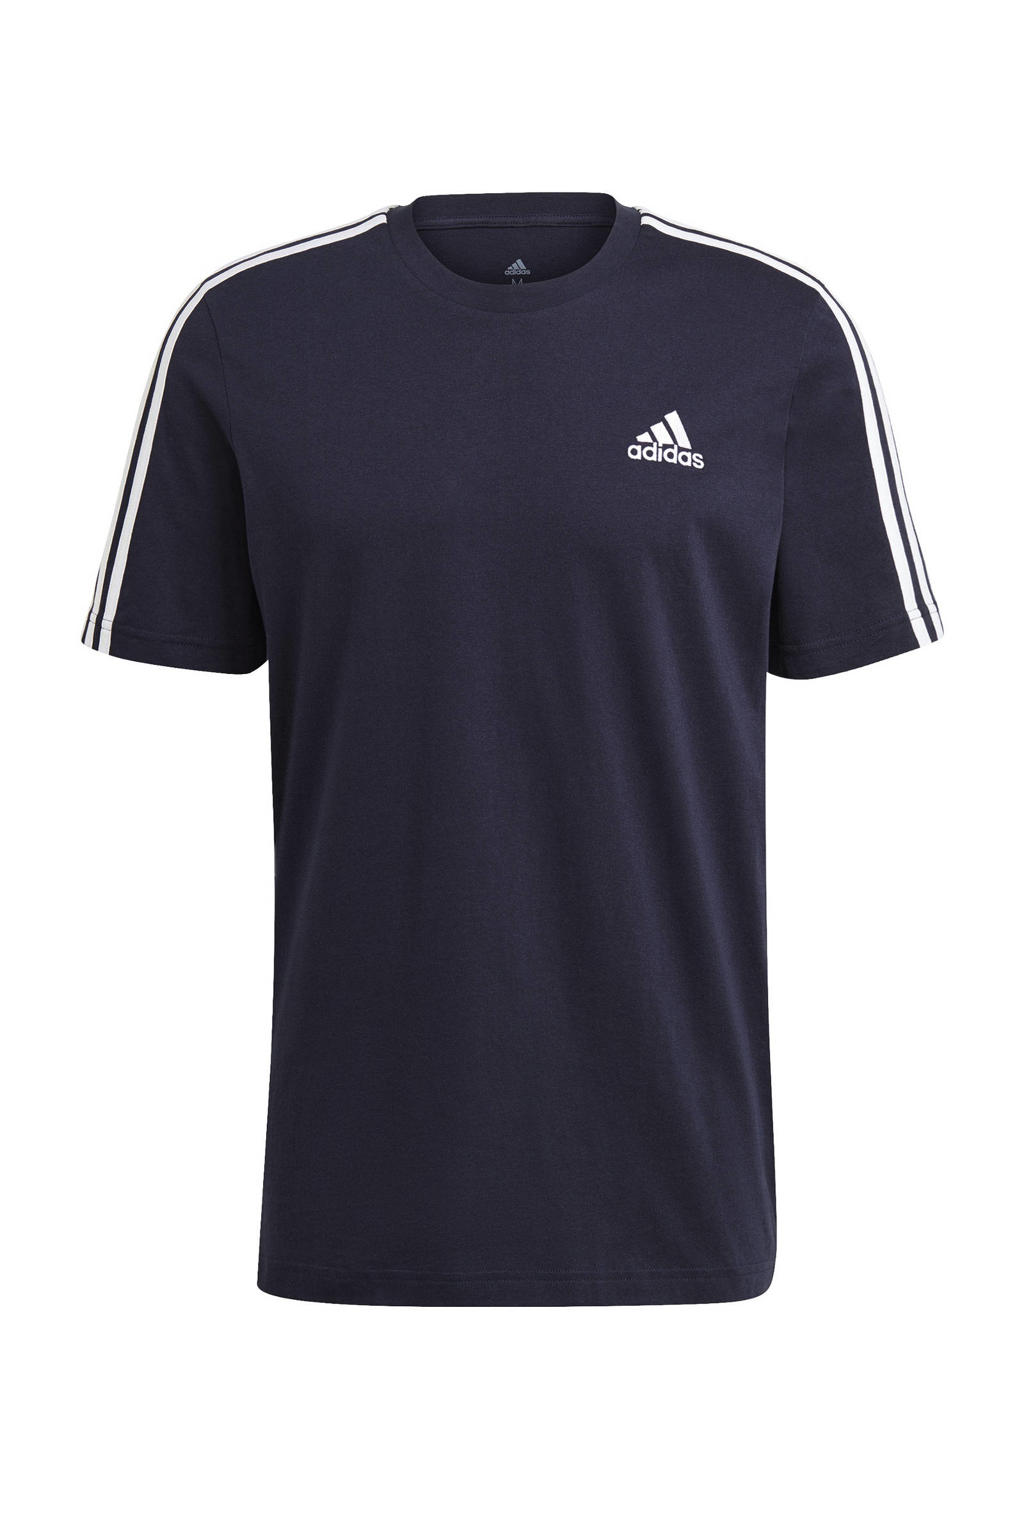 Donkerblauw en witte heren adidas Performance sport T-shirt van katoen met logo dessin, korte mouwen en ronde hals